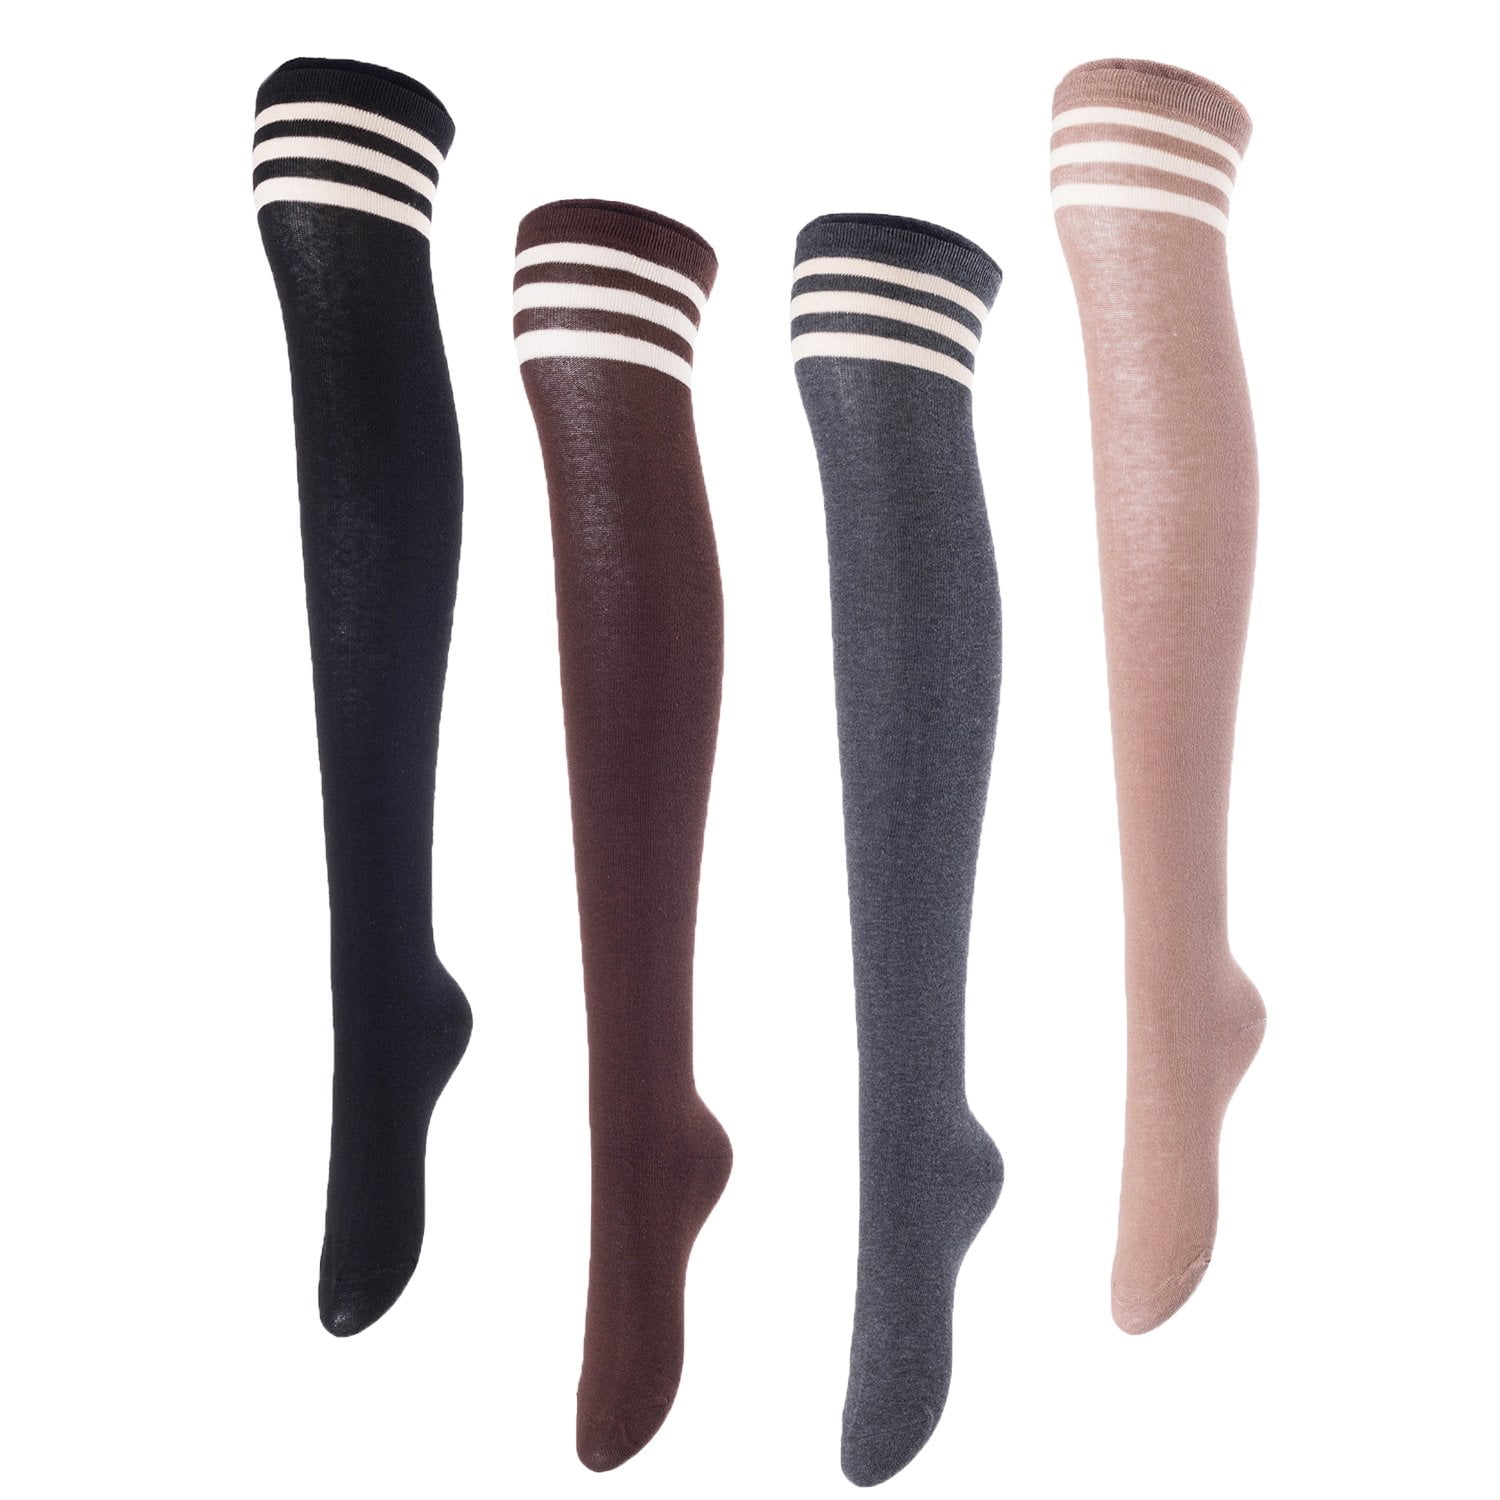 Meso Women's Big Girl's 4 Pairs Splendid Knee High Cotton Socks, Strong ...